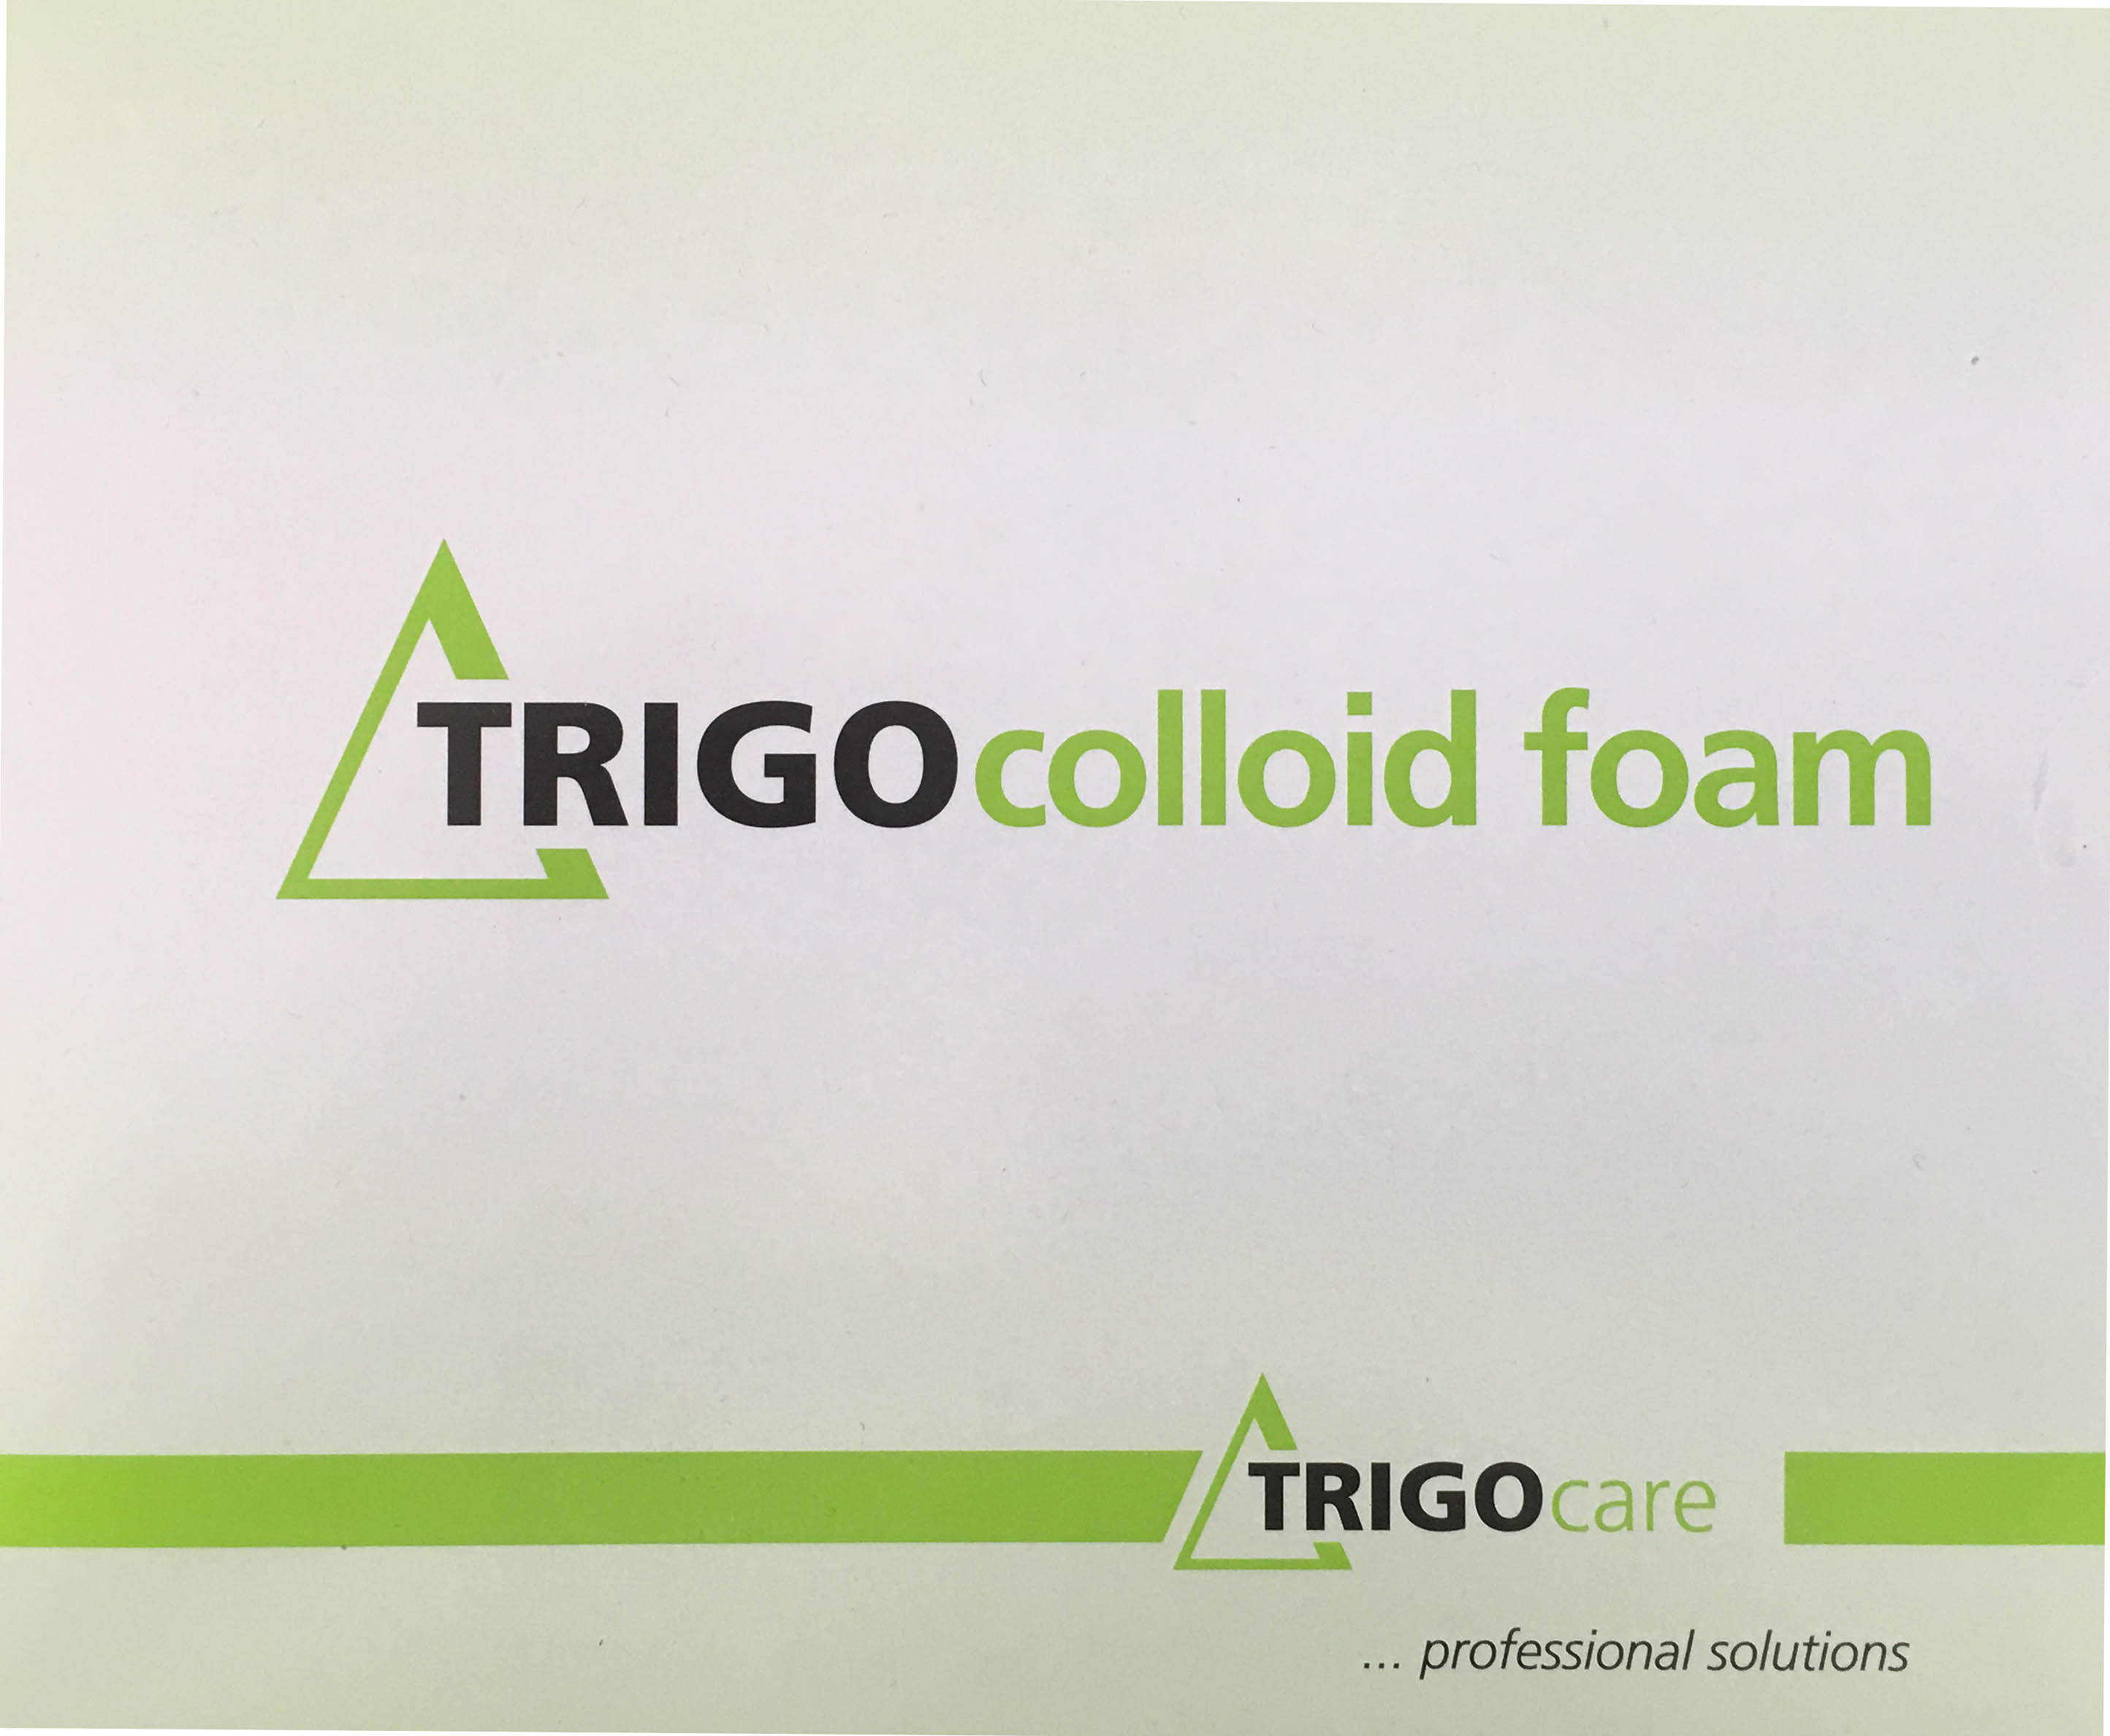 Trigo colloid foam